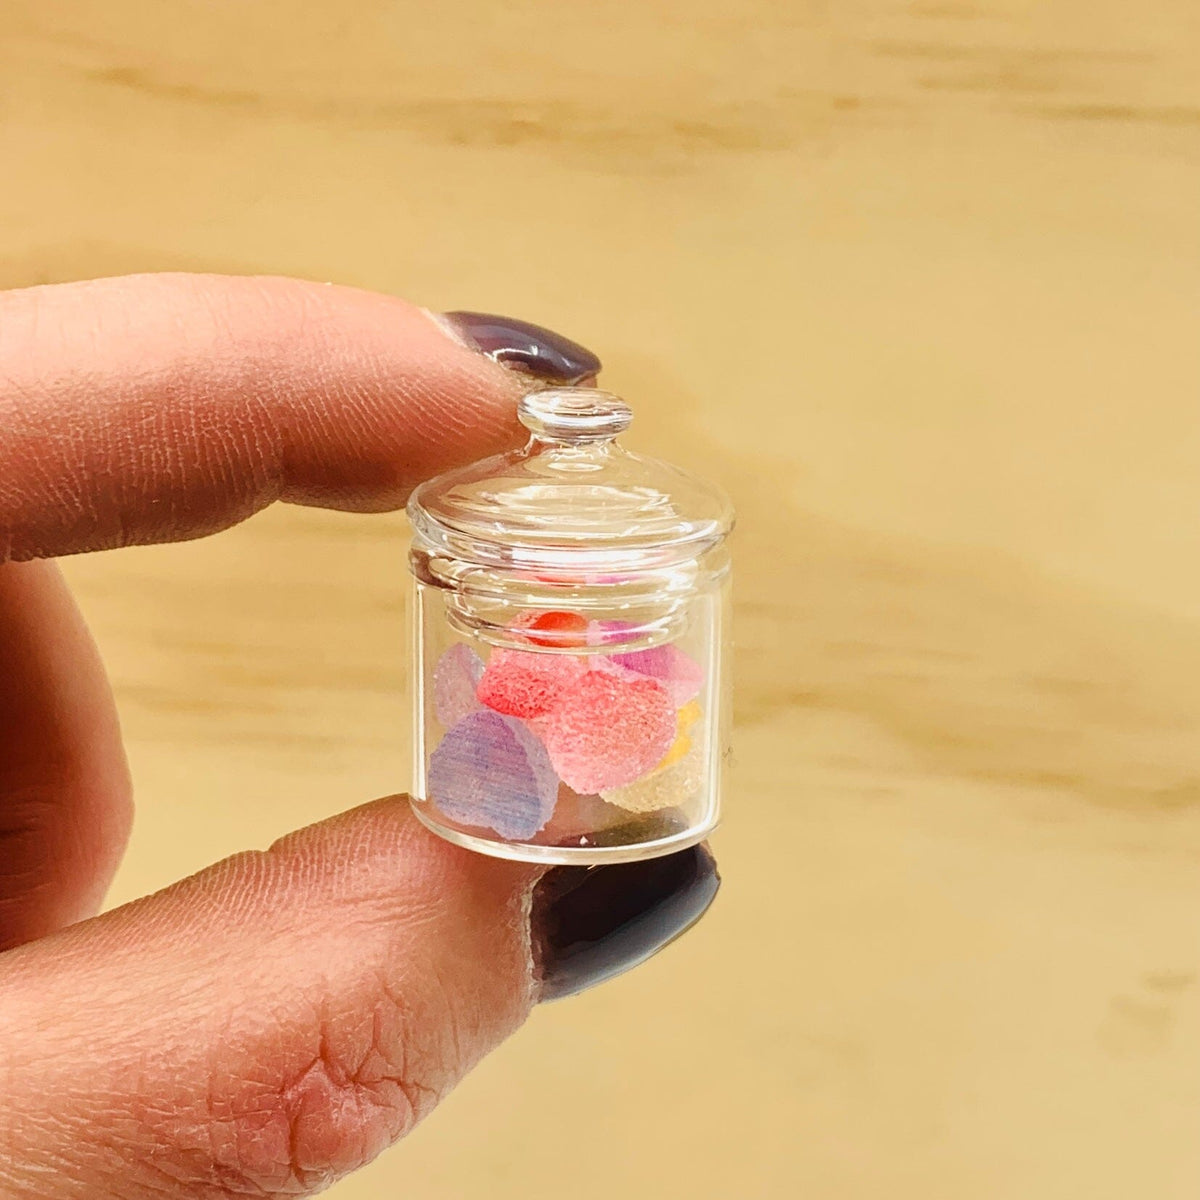 Tiniest Jar of Gumdrops, Hearts Miniature - 